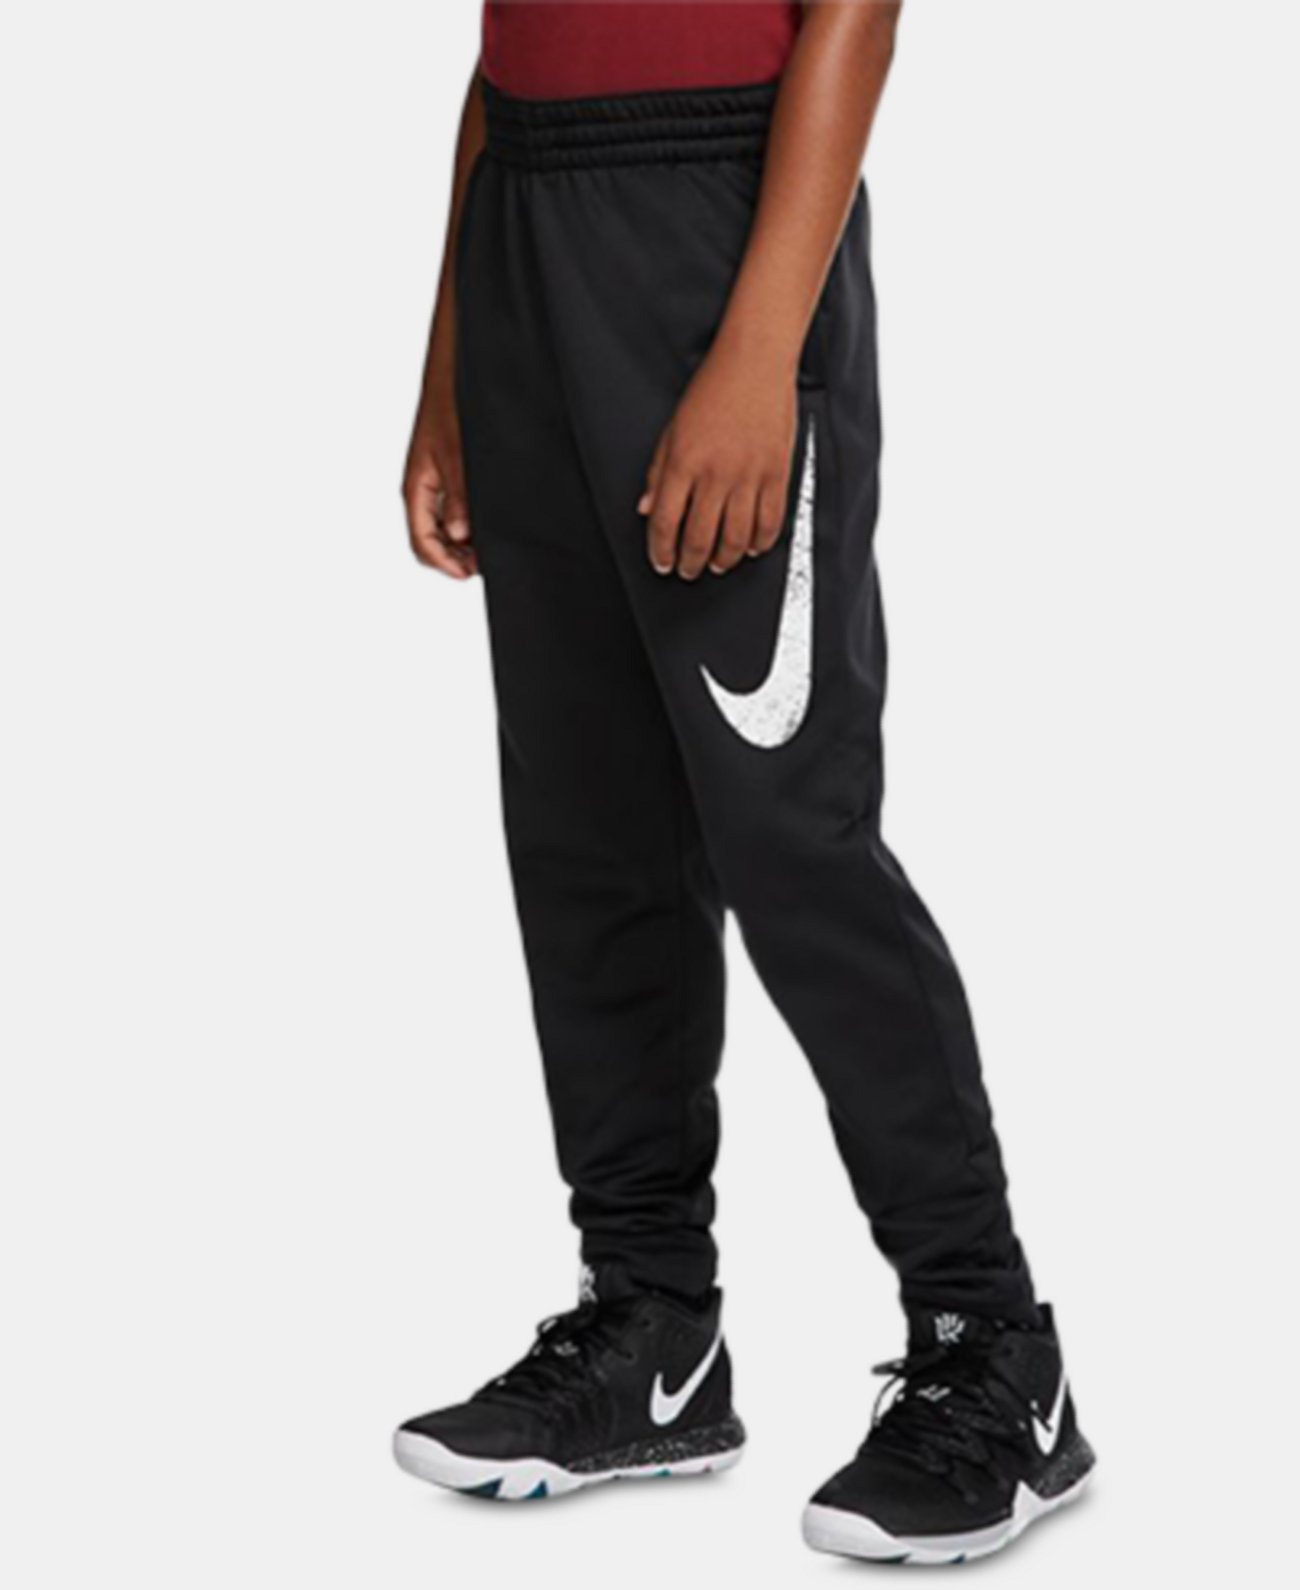 Баскетбольные брюки Big Boys Thermal Nike